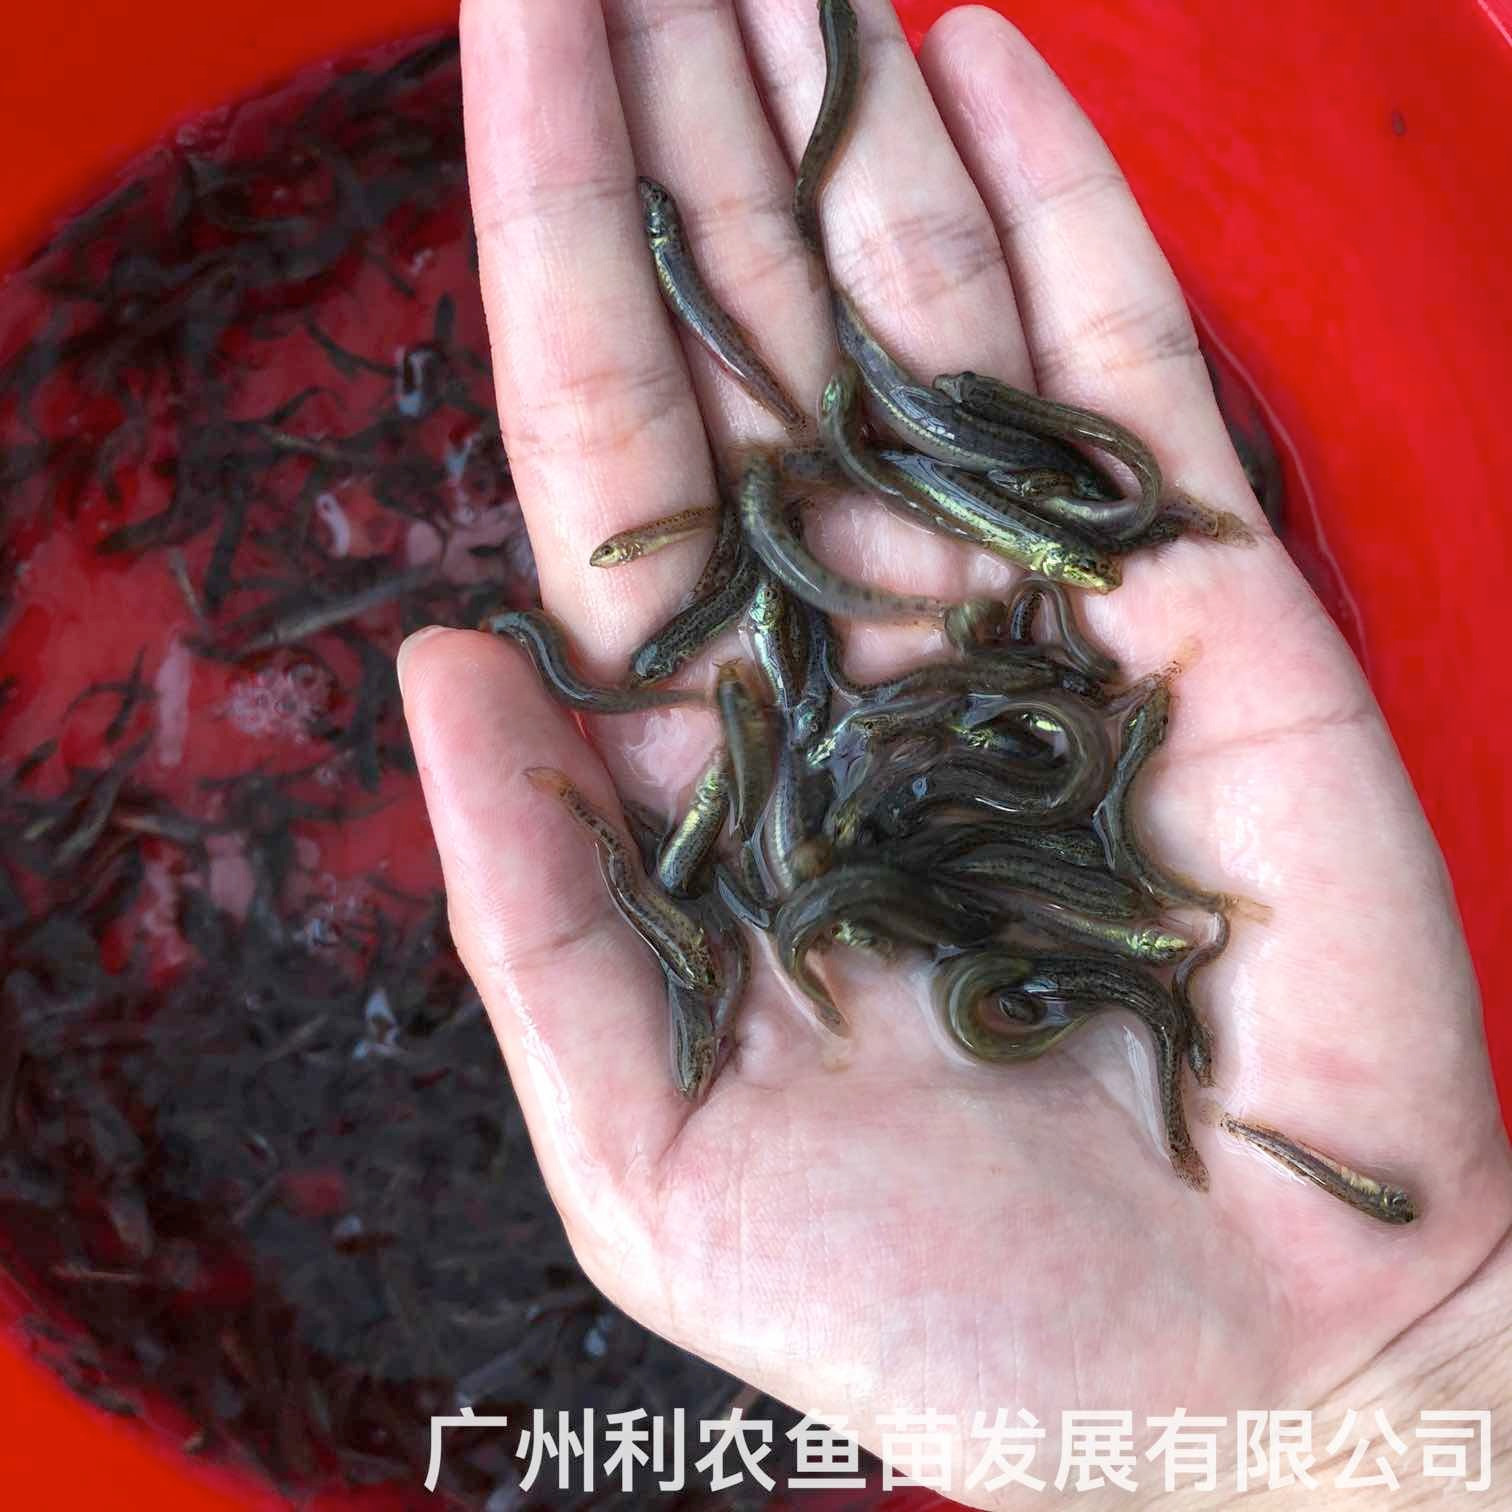 广西贵港台湾泥鳅苗出售出售价格广西贺州泥鳅鱼苗批发养殖基地